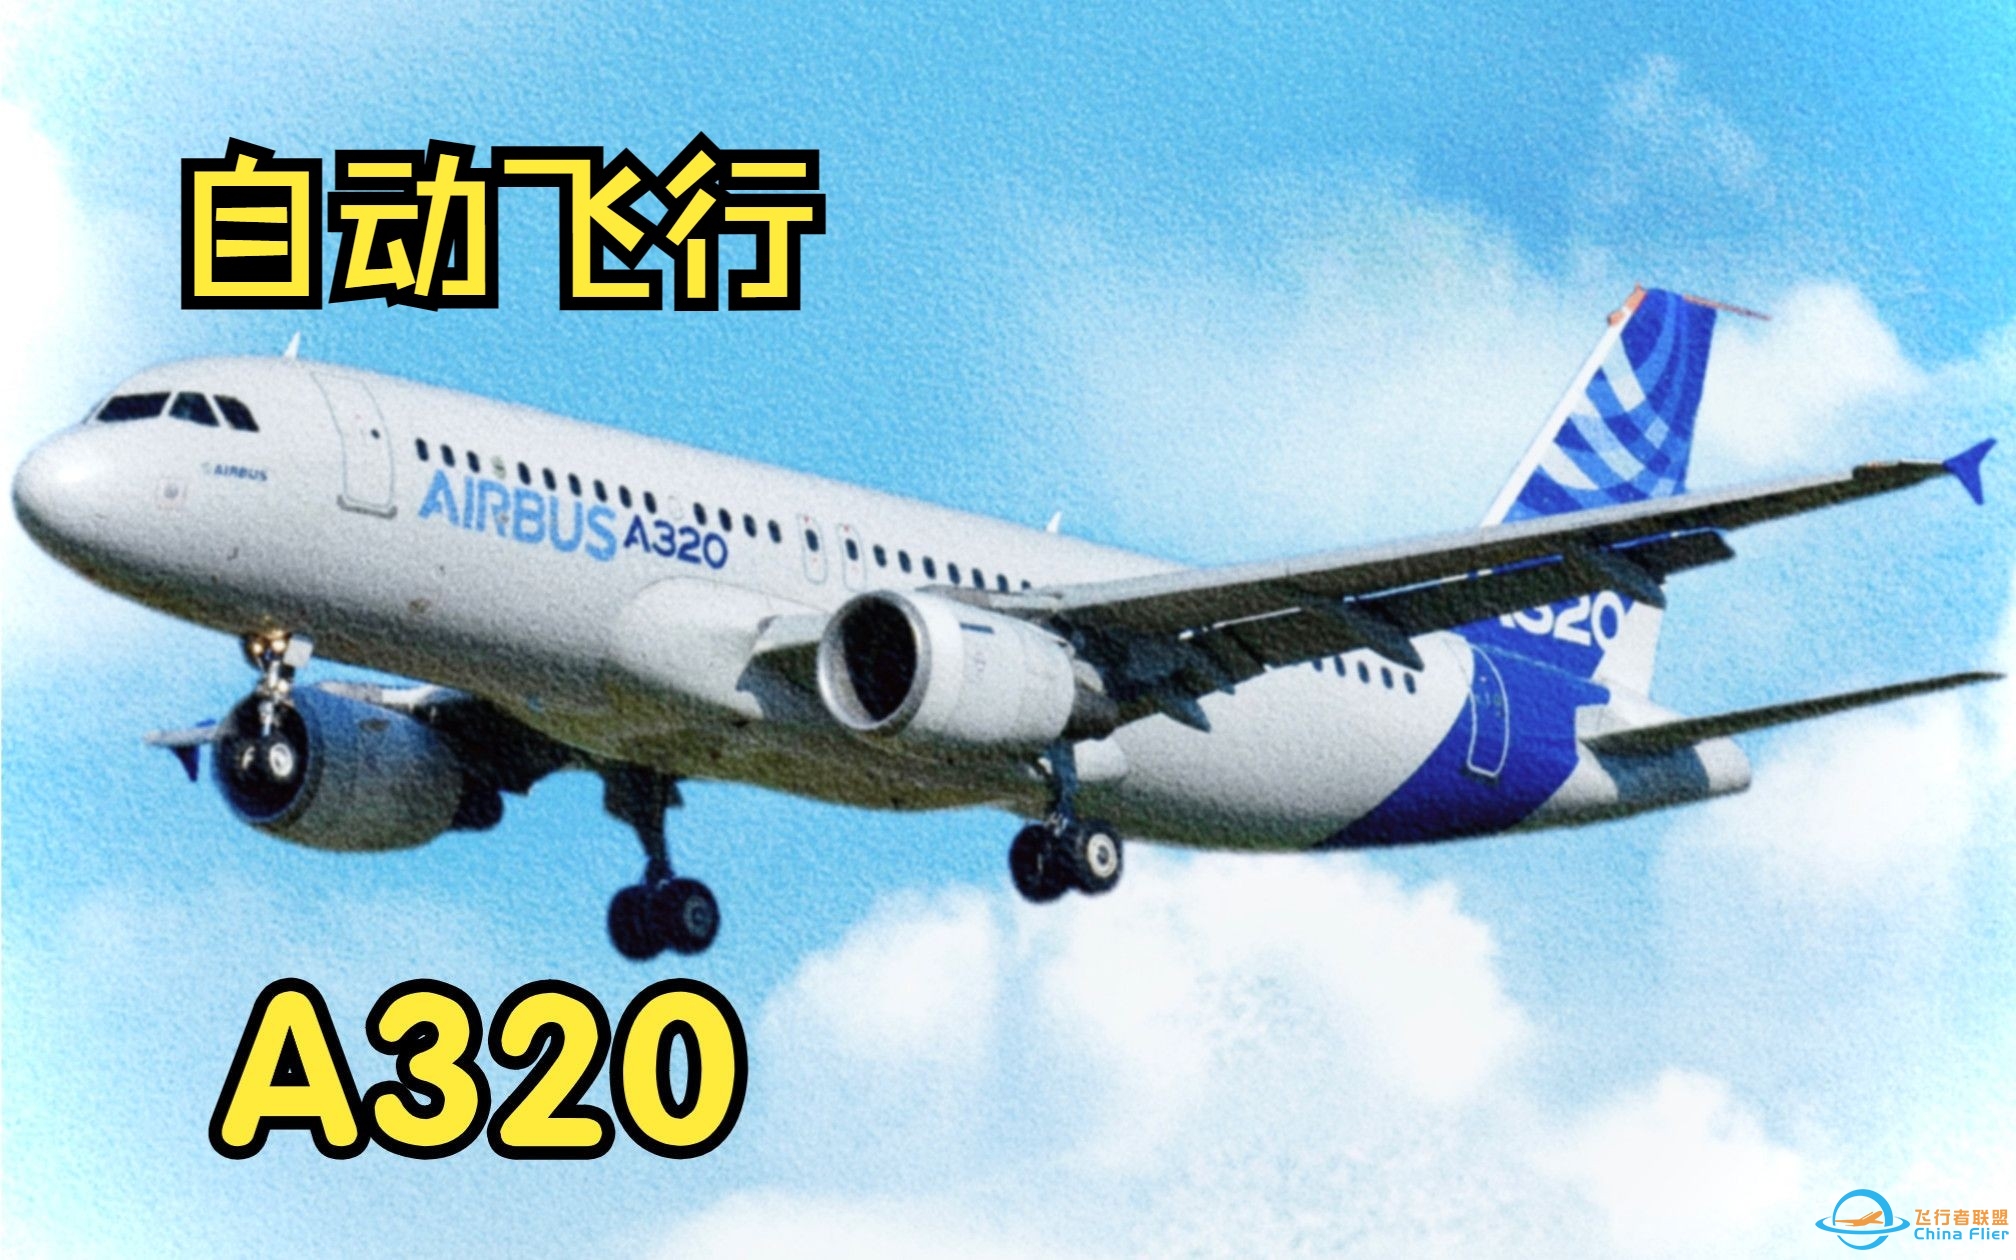 【飞行模拟从零学习空客A320】8.自动飞行系统-6370 